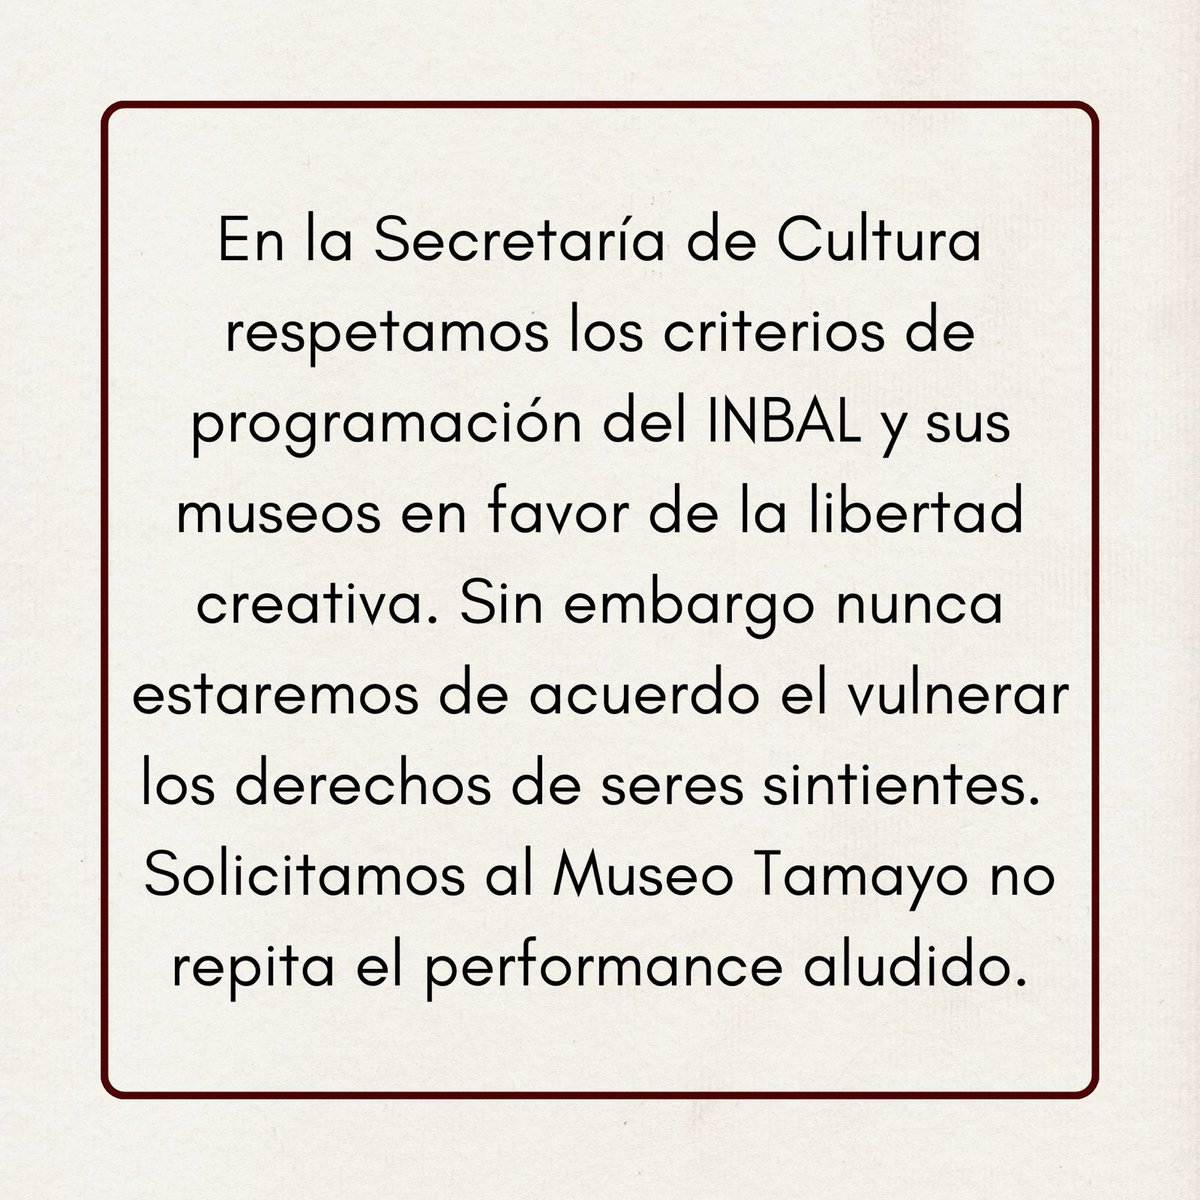 En la Secretaría de Cultura respetamos los criterios de programación del @bellasartesinba y sus museos en favor de la libertad creativa. Sin embargo nunca estaremos de acuerdo en vulnerar los derechos de seres sintientes. Solicitamos al @museotamayo no repita el performance